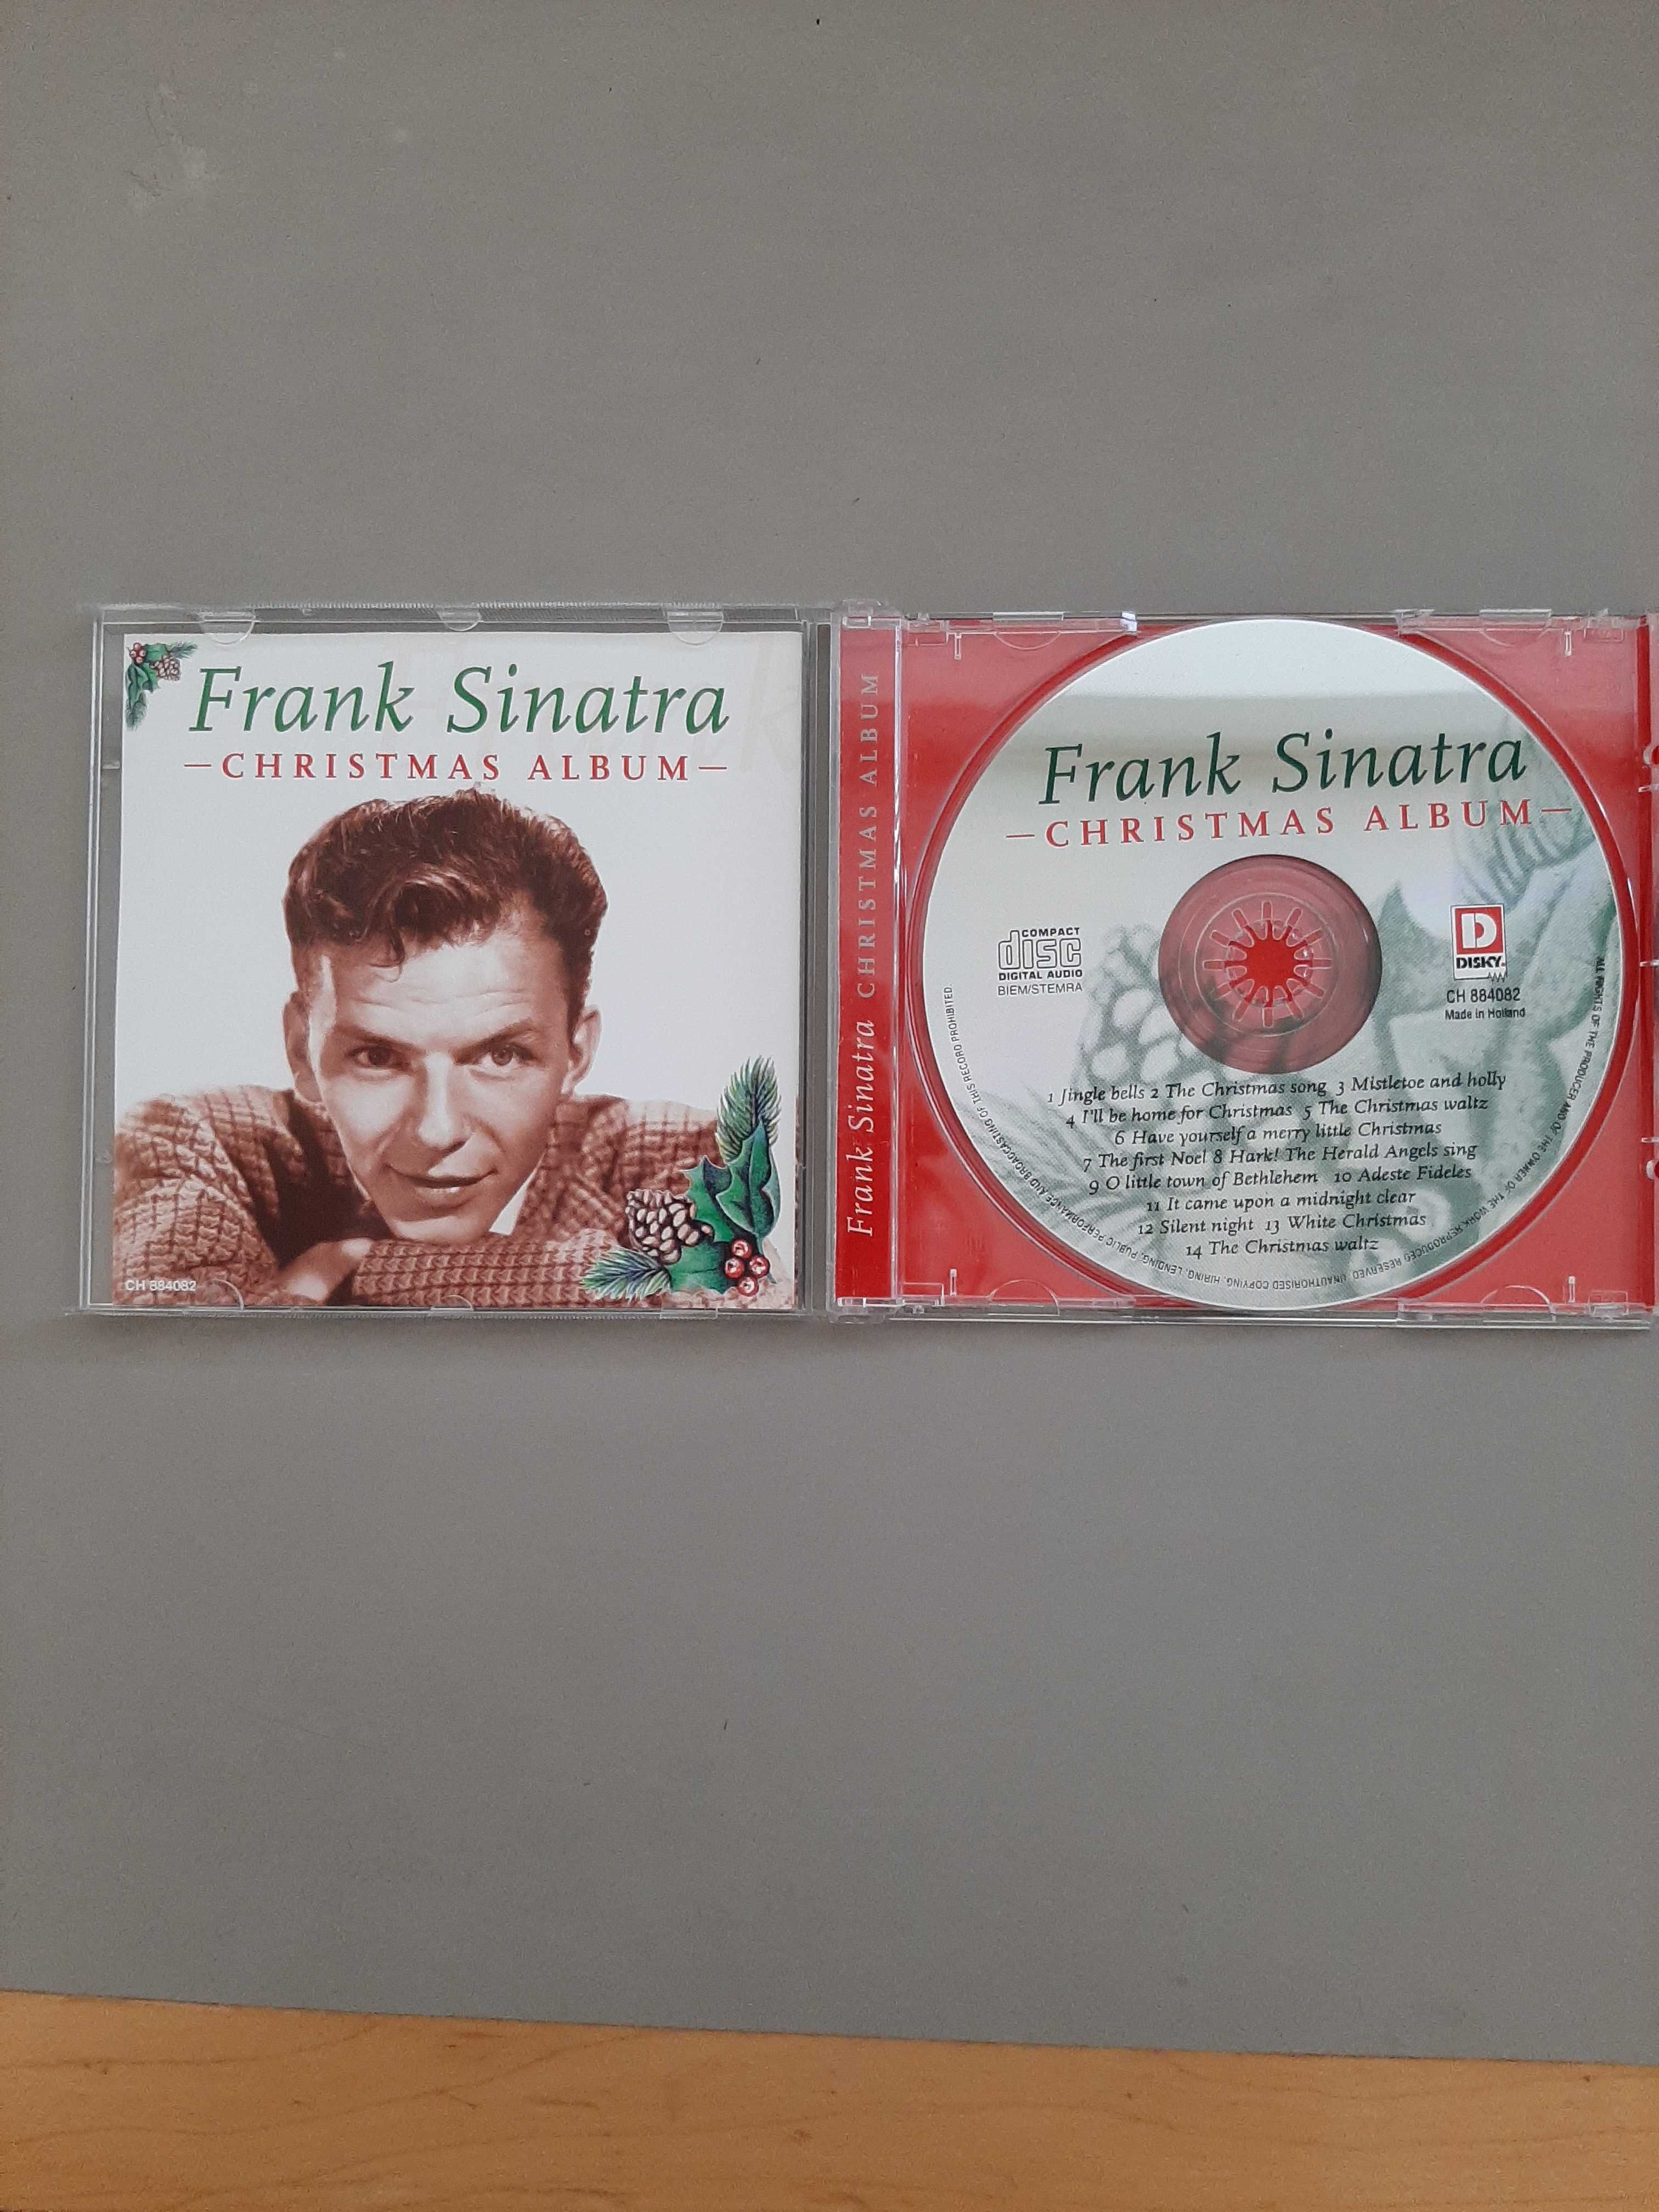 Frank Sinatra CD de Natal